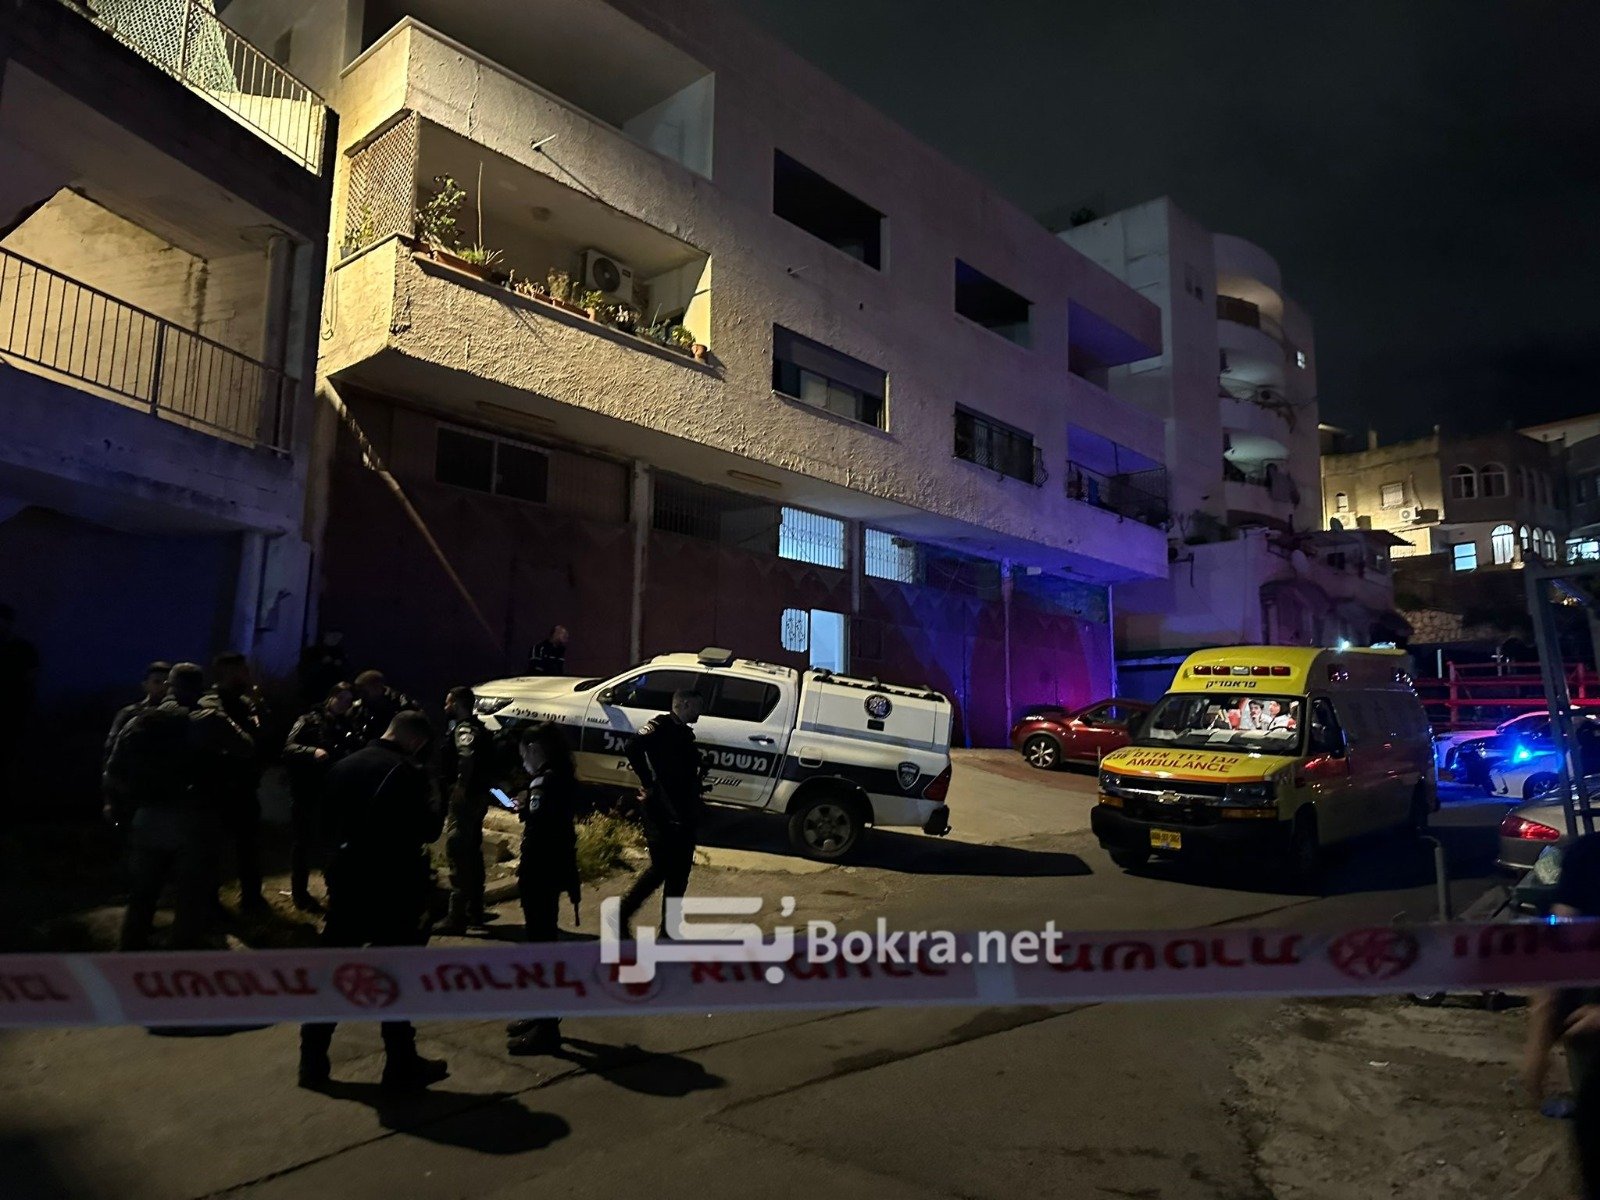 مجزرة الناصرة، ليلة العيد: شخص يطلق النار على افراد عائلته، 7 اصابات، 3 قتلى، واصابات حرجة!-2